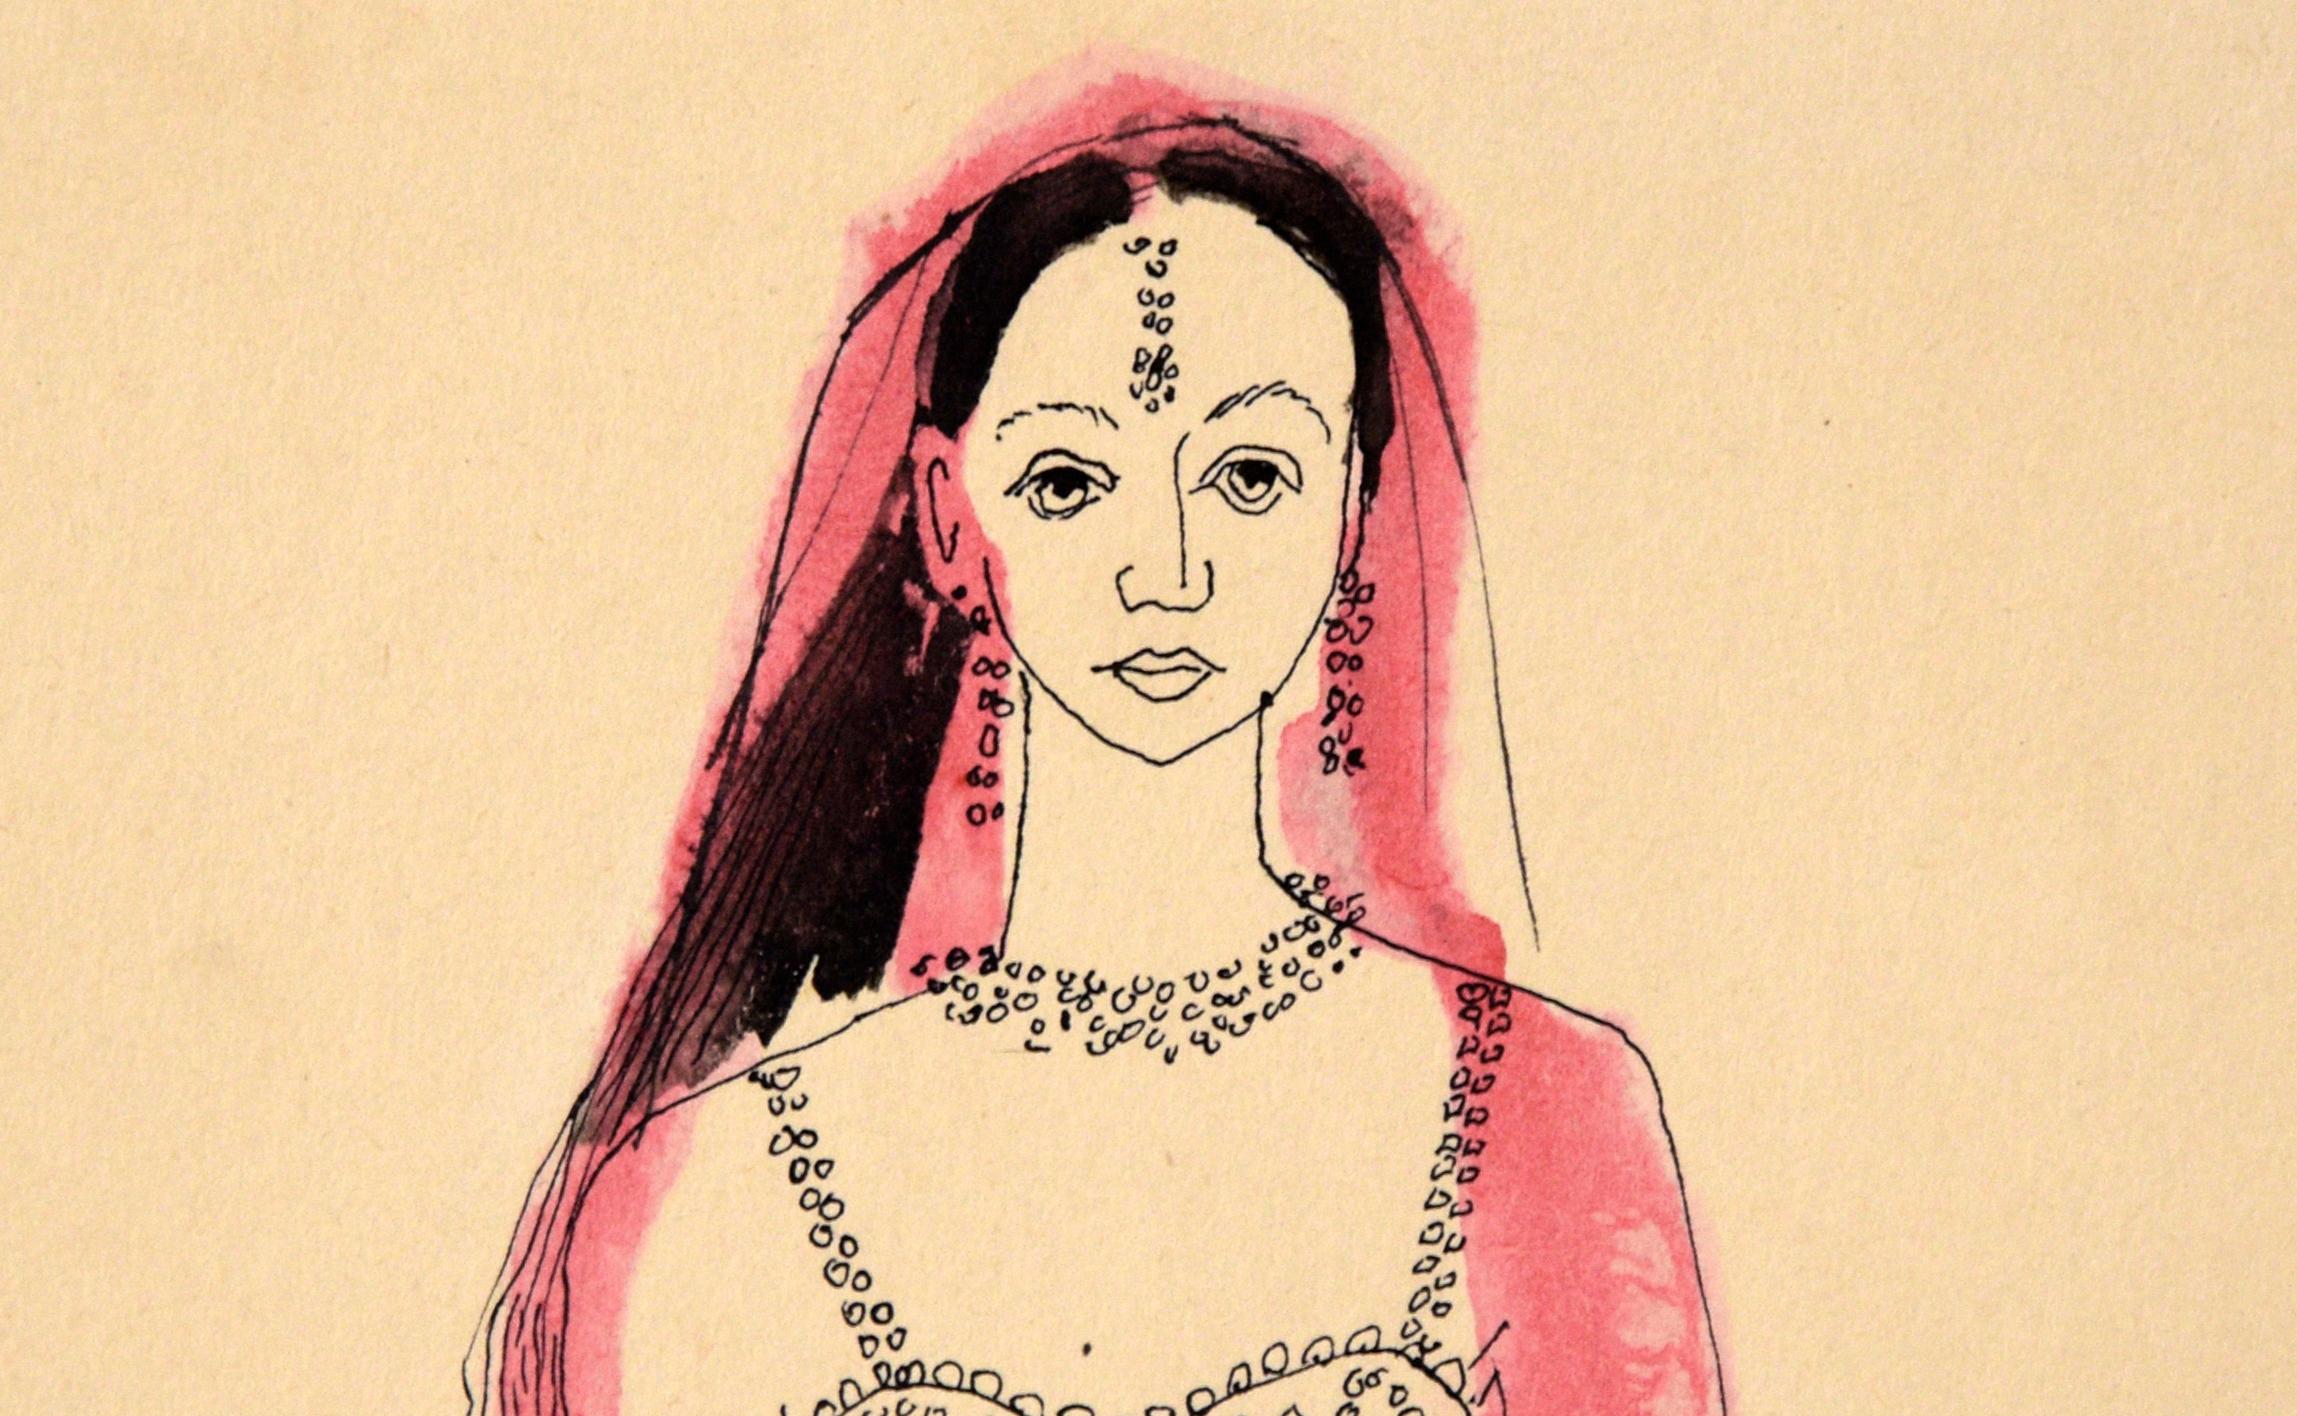 Danseuse indienne - Illustration vintage à l'encre et à l'aquarelle - Art de Irene Pattinson